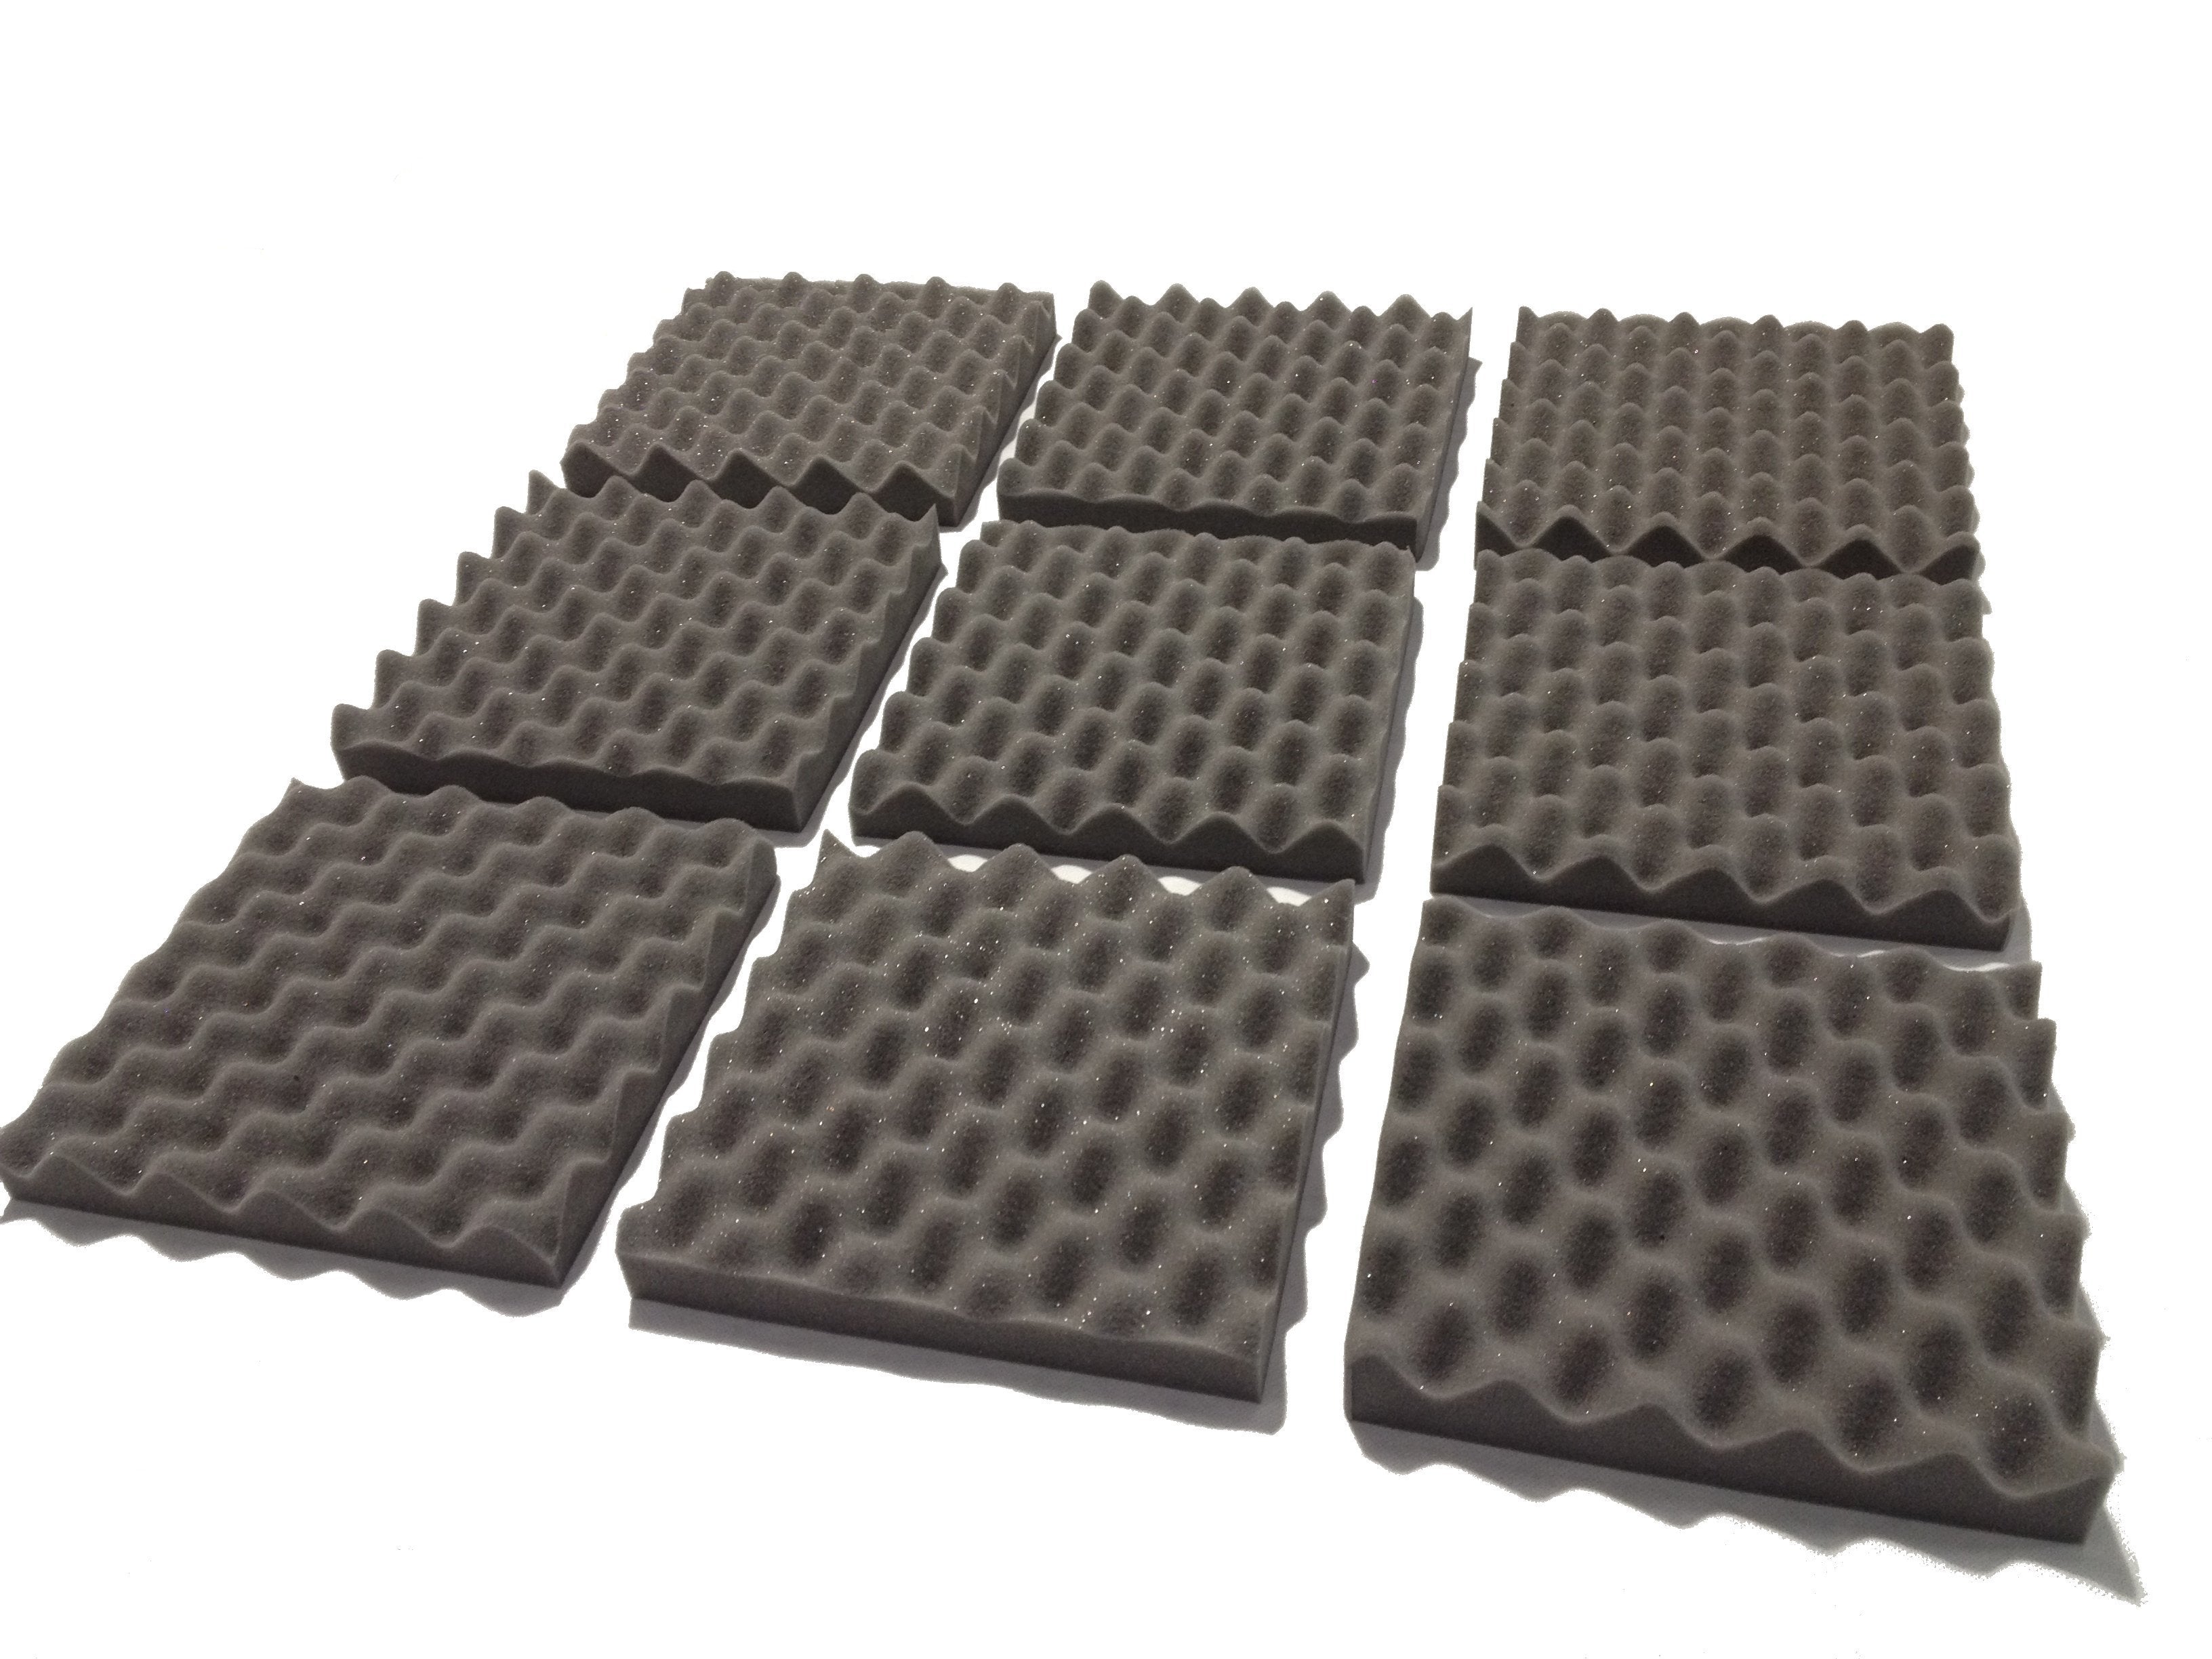 F . A . T . 10" Acoustic Studio Foam Tile Kit - Advanced Acoustics